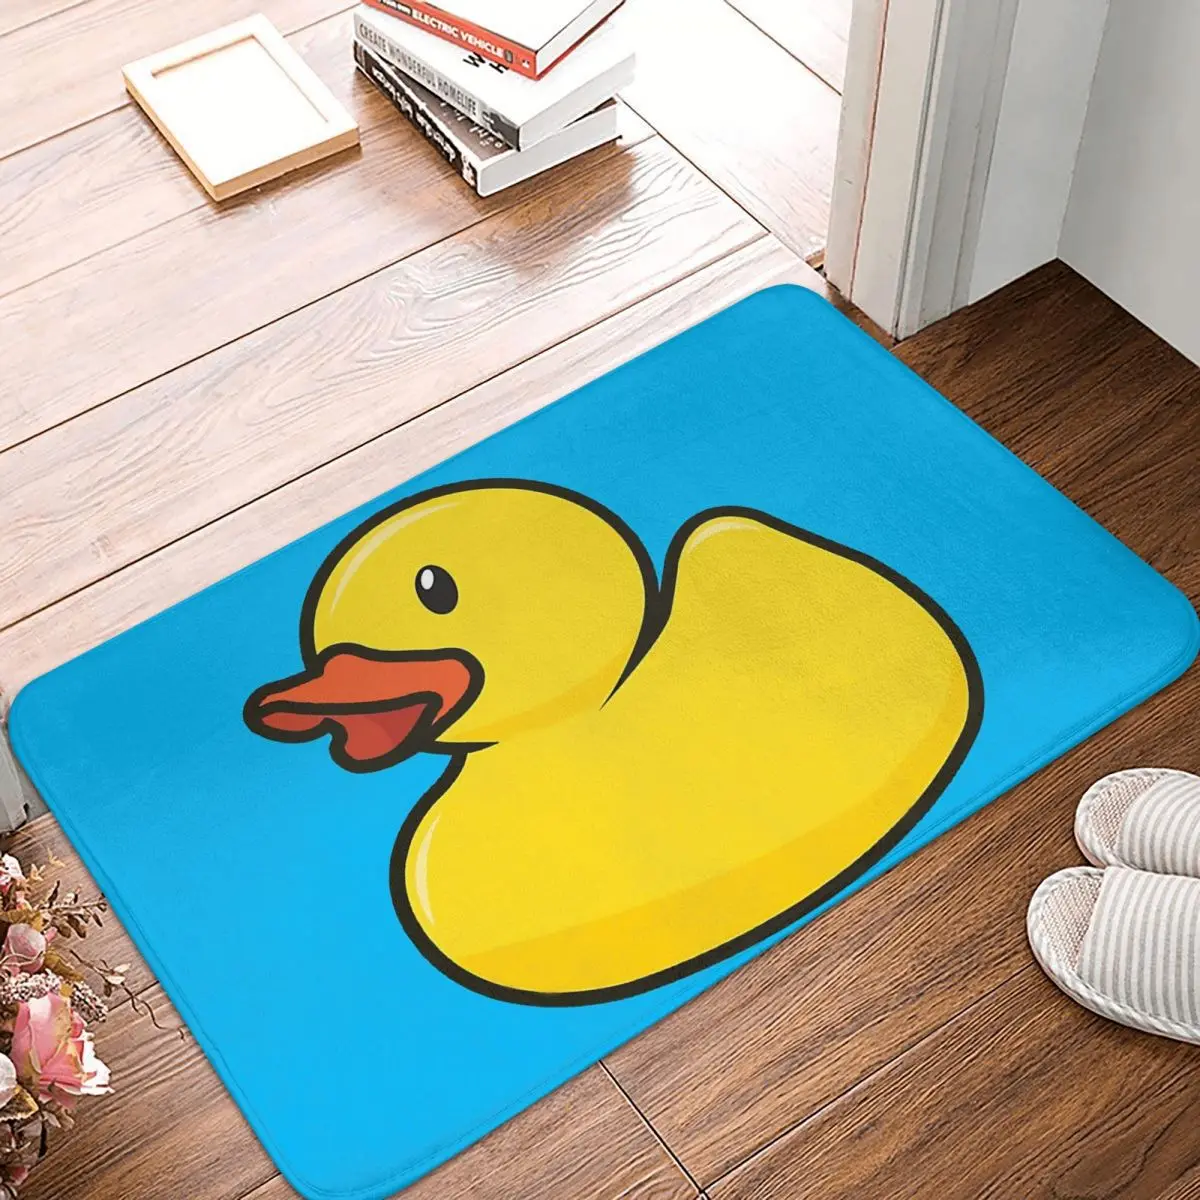 Rubber Duck Anti-Slip Doormat Bath Mat Big Floor Carpet Entrance Door Rug Home Decor